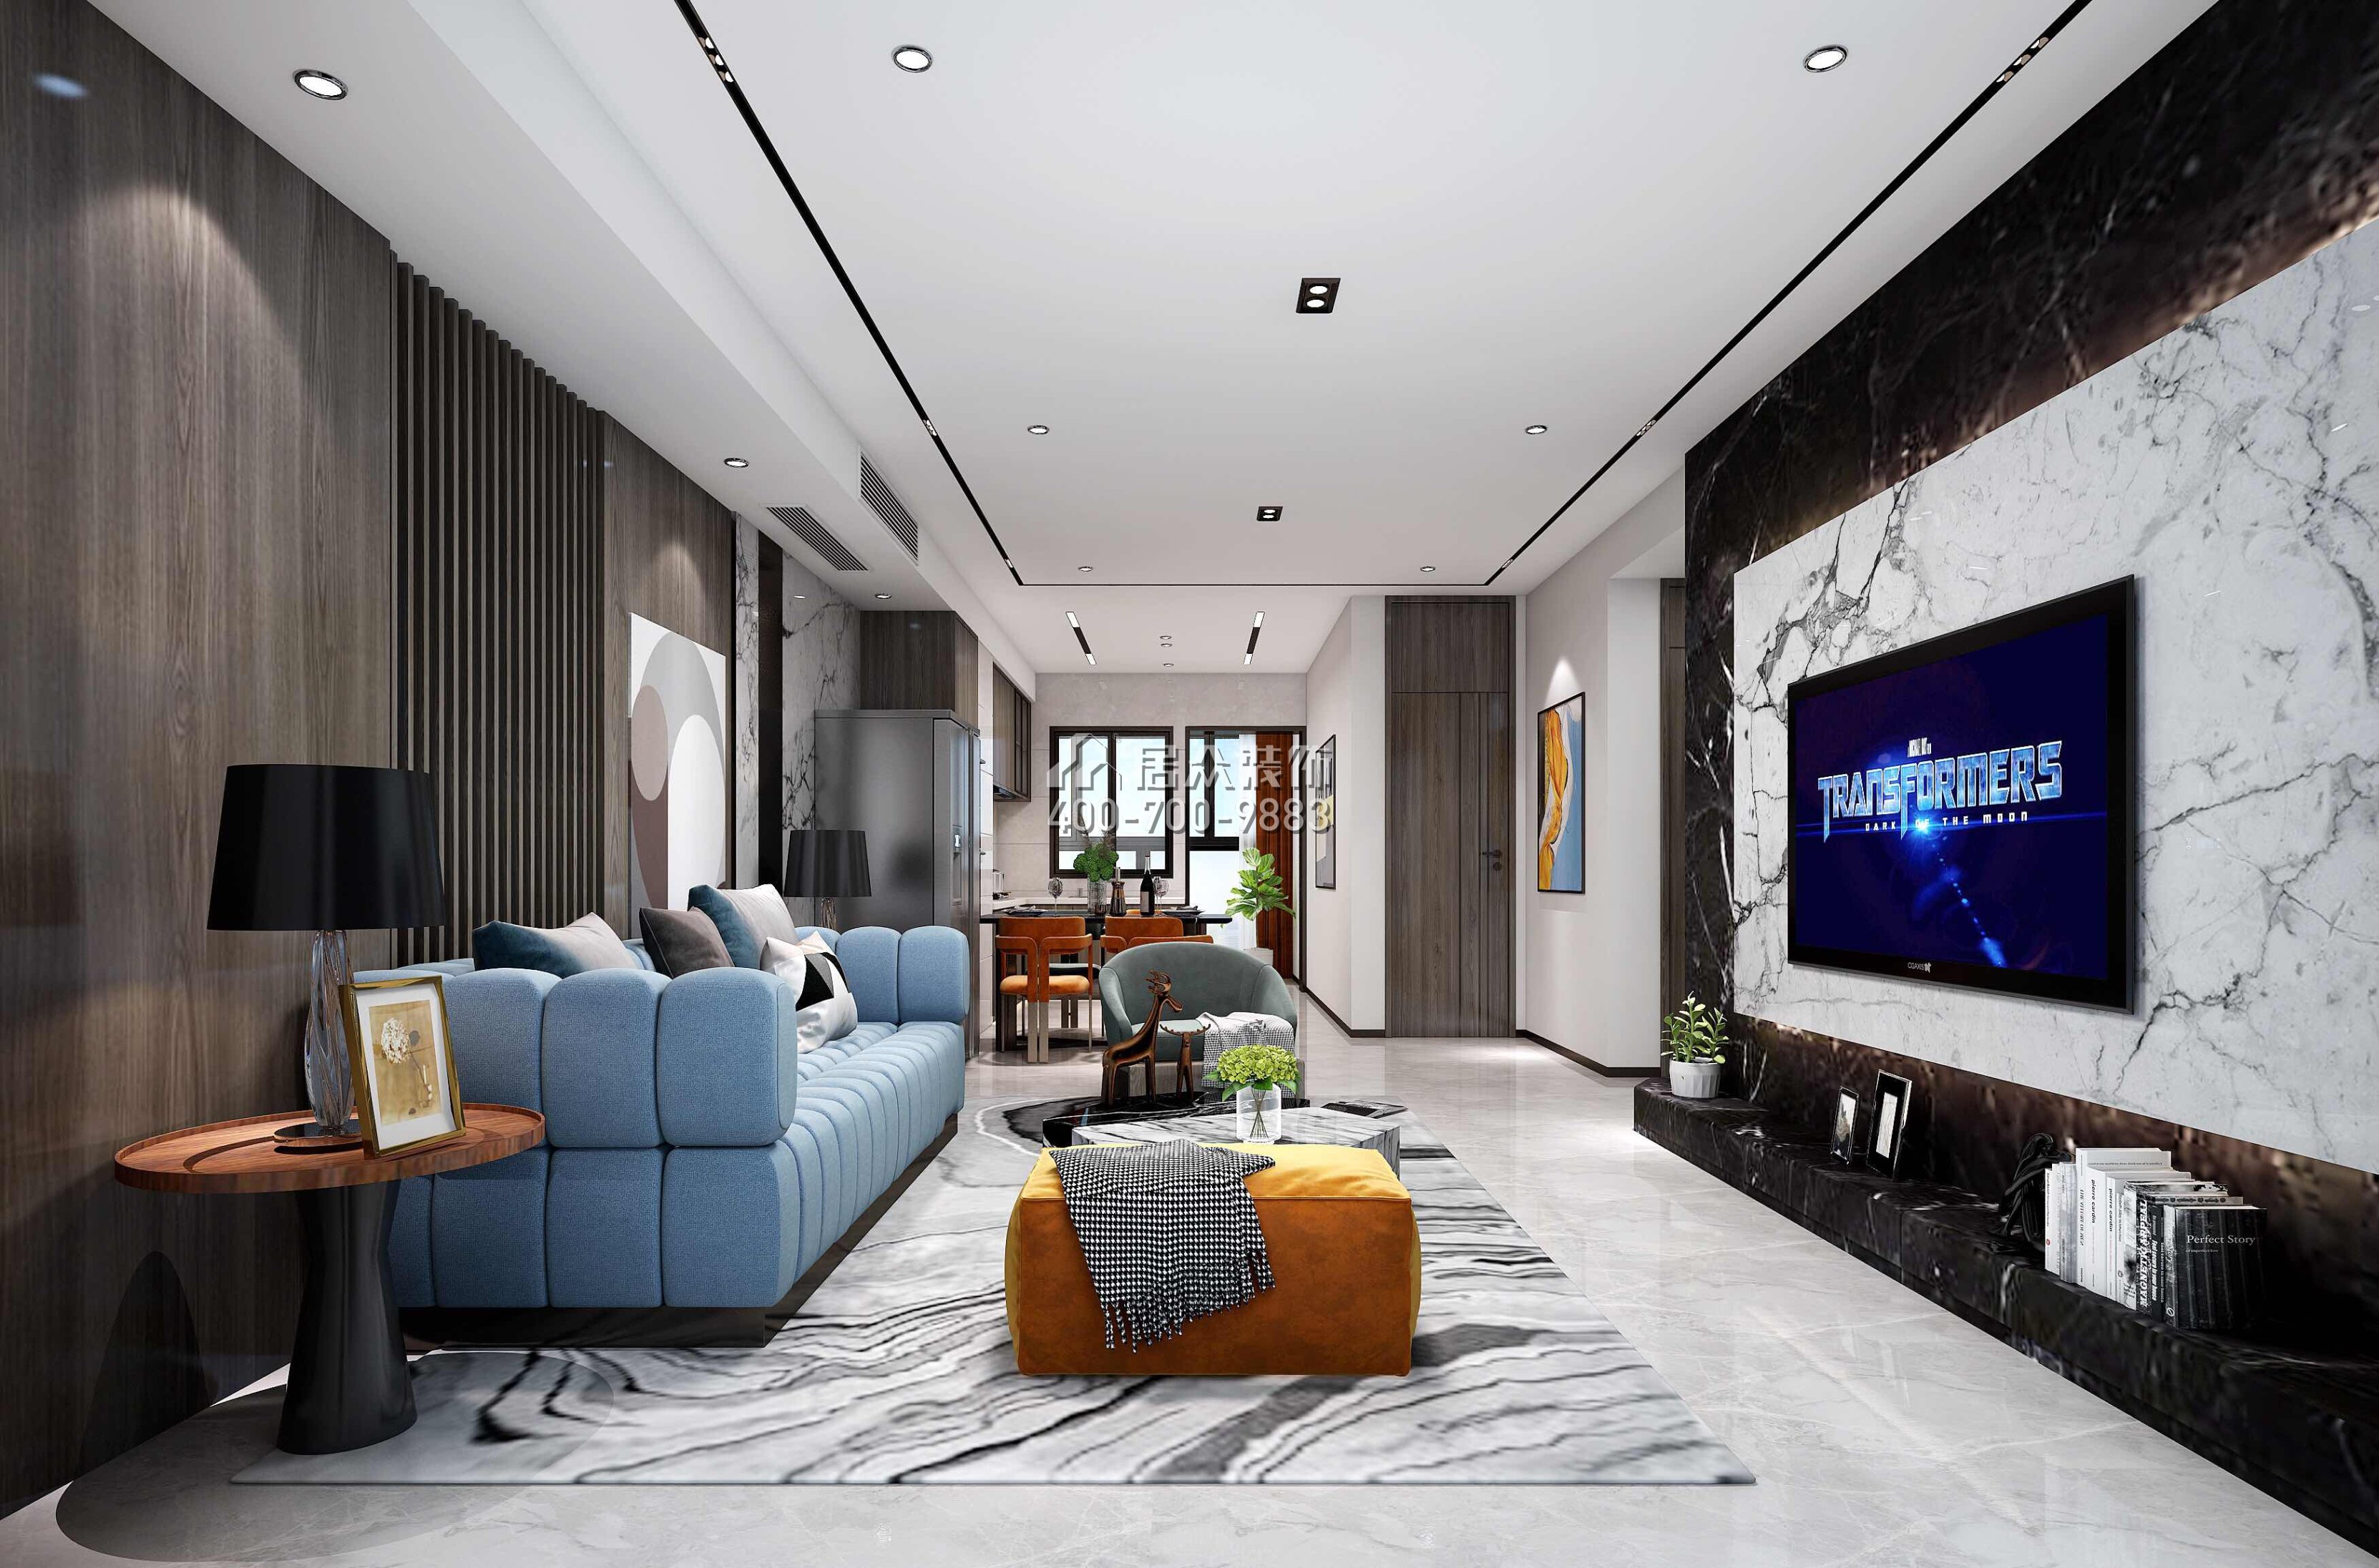 華潤小徑灣110平方米現代簡約風格平層戶型客廳裝修效果圖